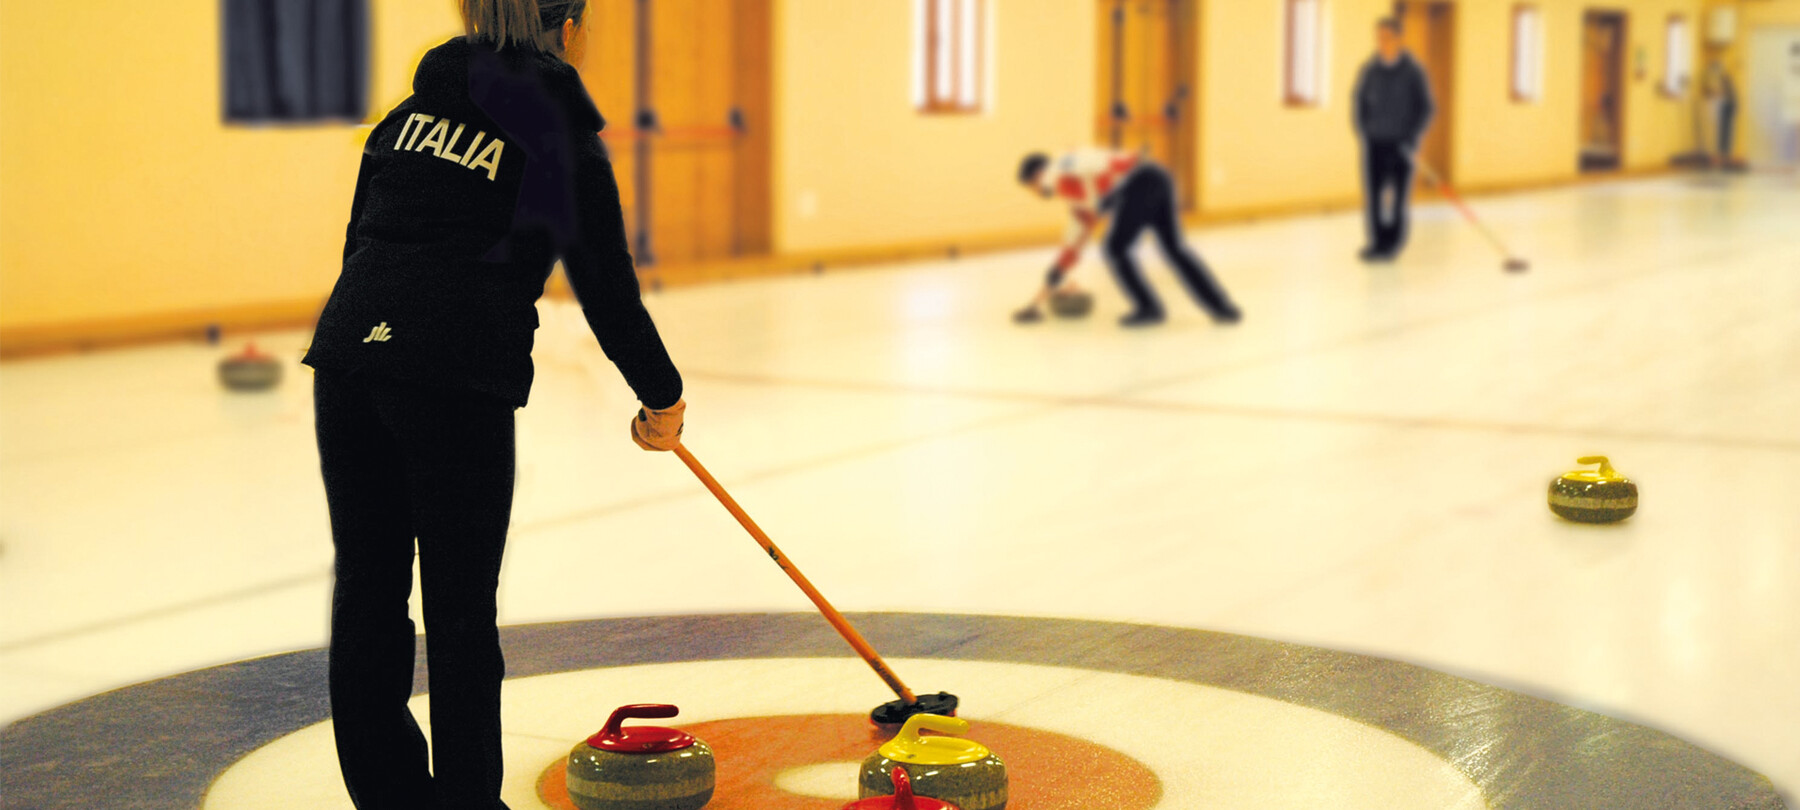 Dove praticare il curling in Trentino